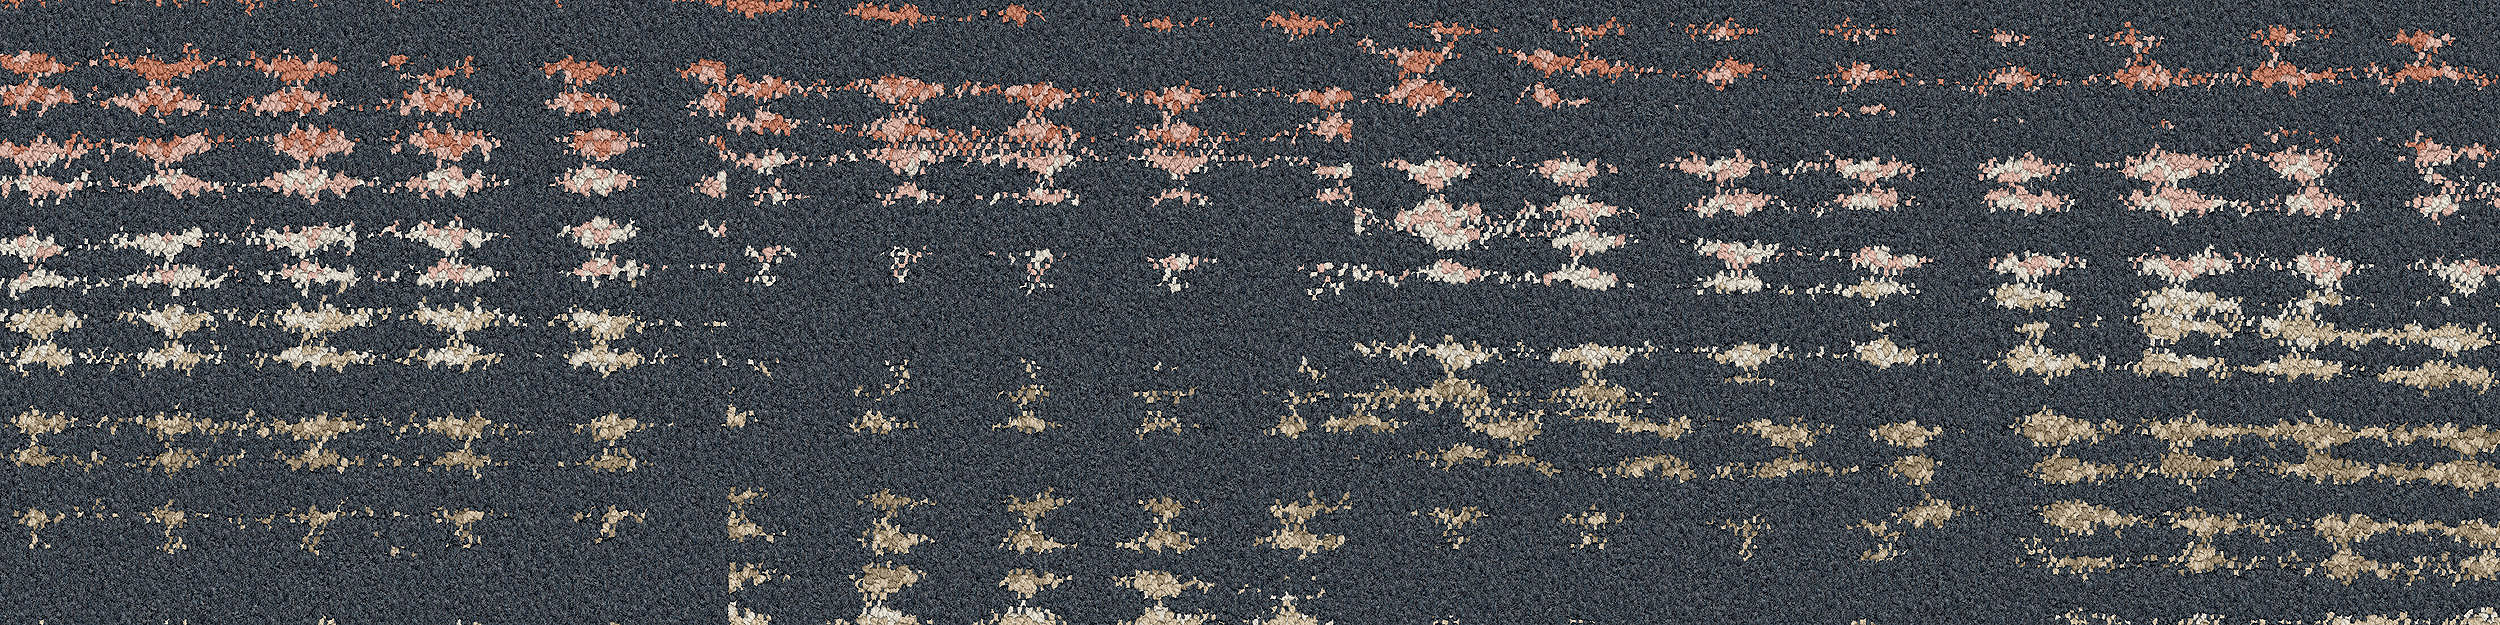 Aquatint Carpet Tile in Vellum imagen número 5